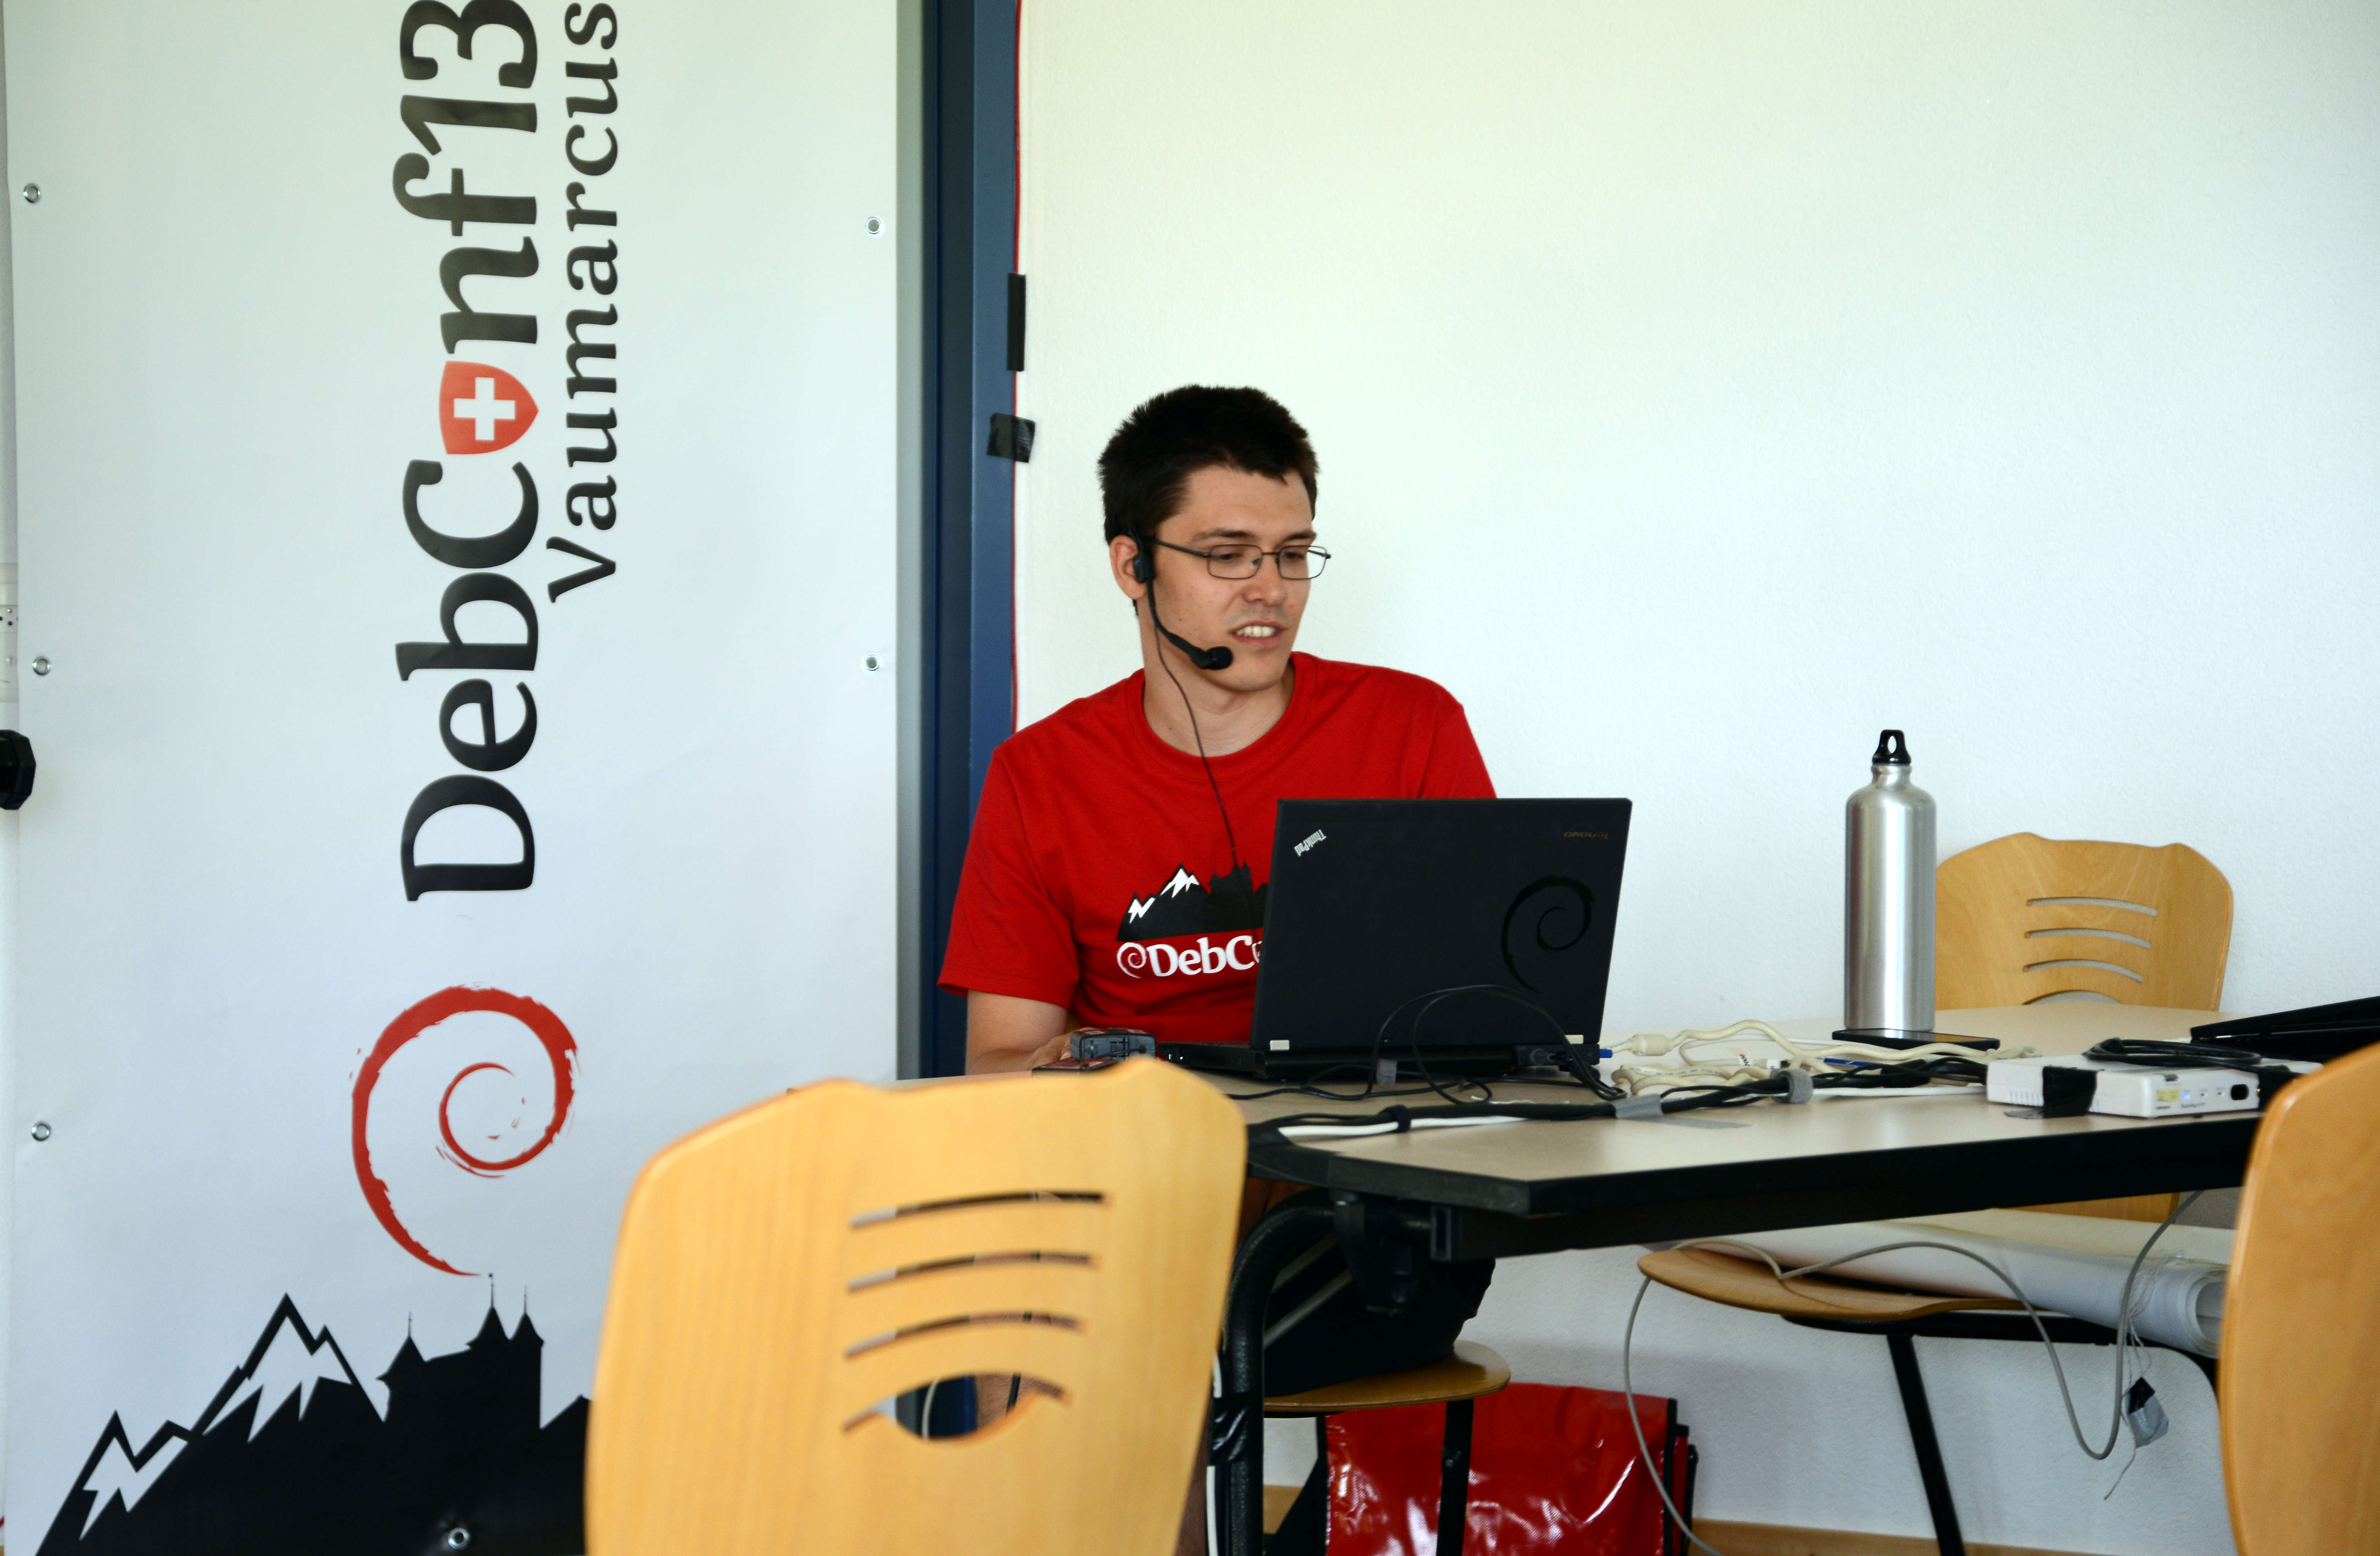 Fabian Gruenbichler, DebConf13, Debian, Vaumarcus, Switzerland, Google Summer of Code